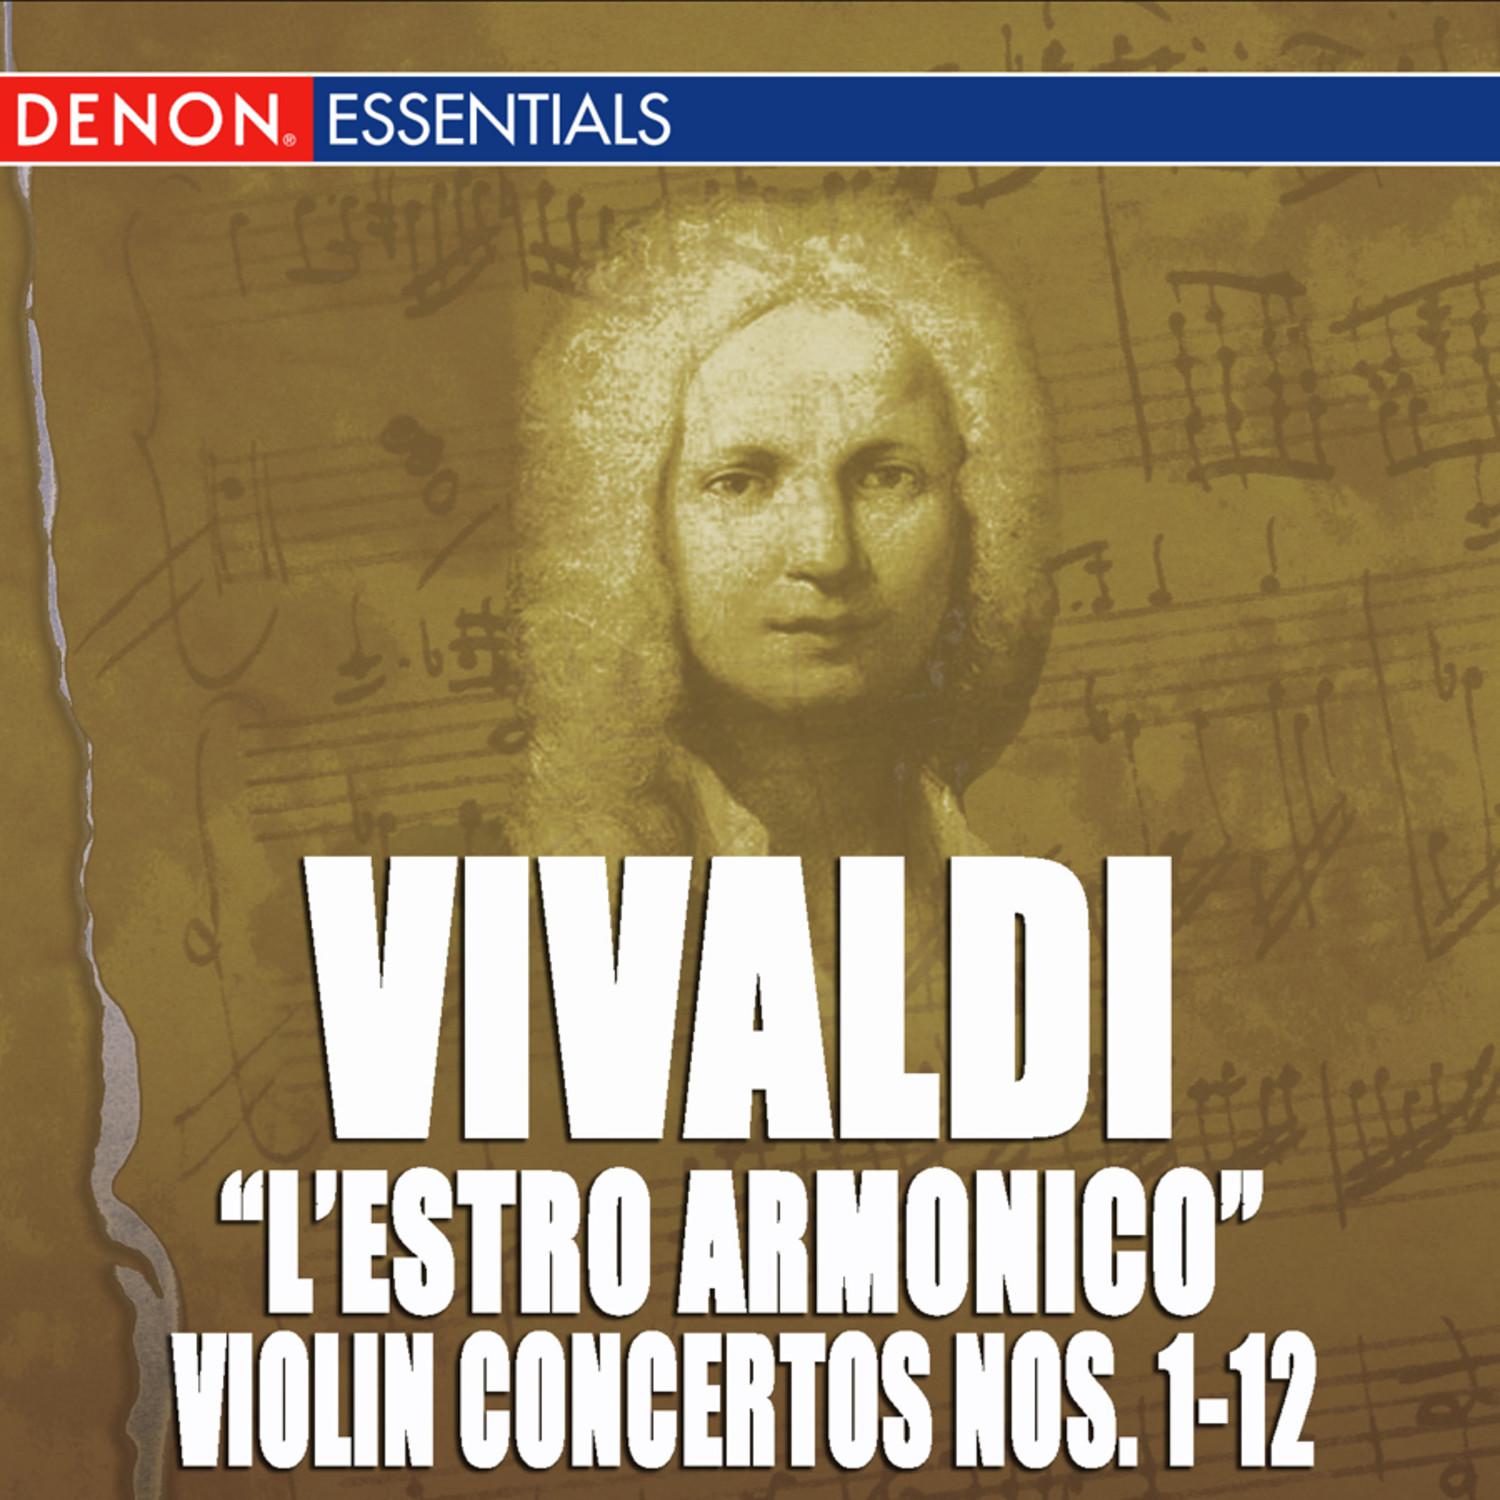 Concerto for 4 Violins, Strings & B.c. No. 4 in E Minor, Op. 3 RV 550: III. Adagio